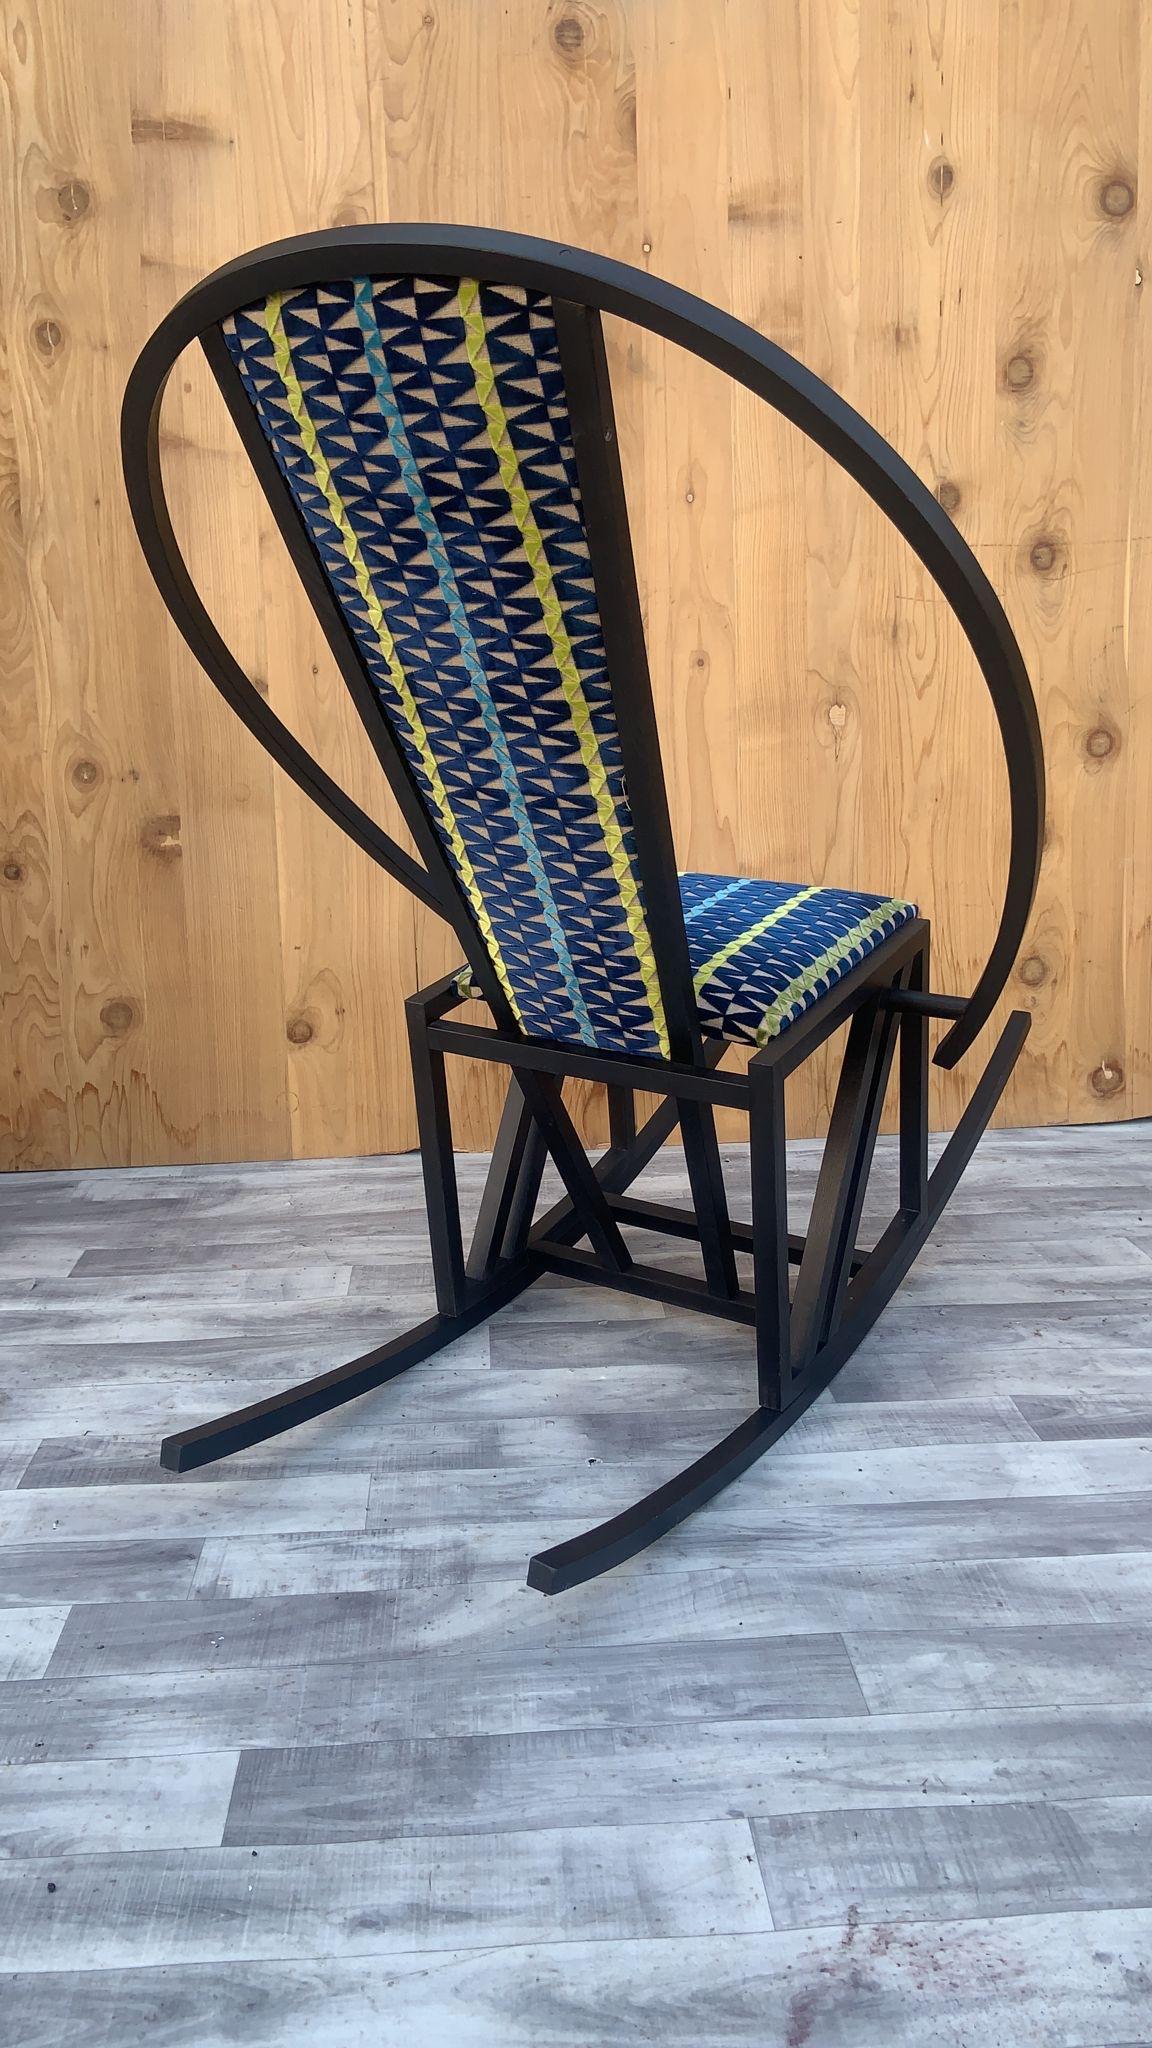 Fauteuil à bascule vintage Pascal Mourgue nouvellement recouvert de tissu Knoll

Ce fauteuil à bascule de style Pascal Mourgue est fabriqué en bouleau. Le bouleau a été teinté et le siège a été recouvert d'un tissu moelleux de Knoll. Cette chaise